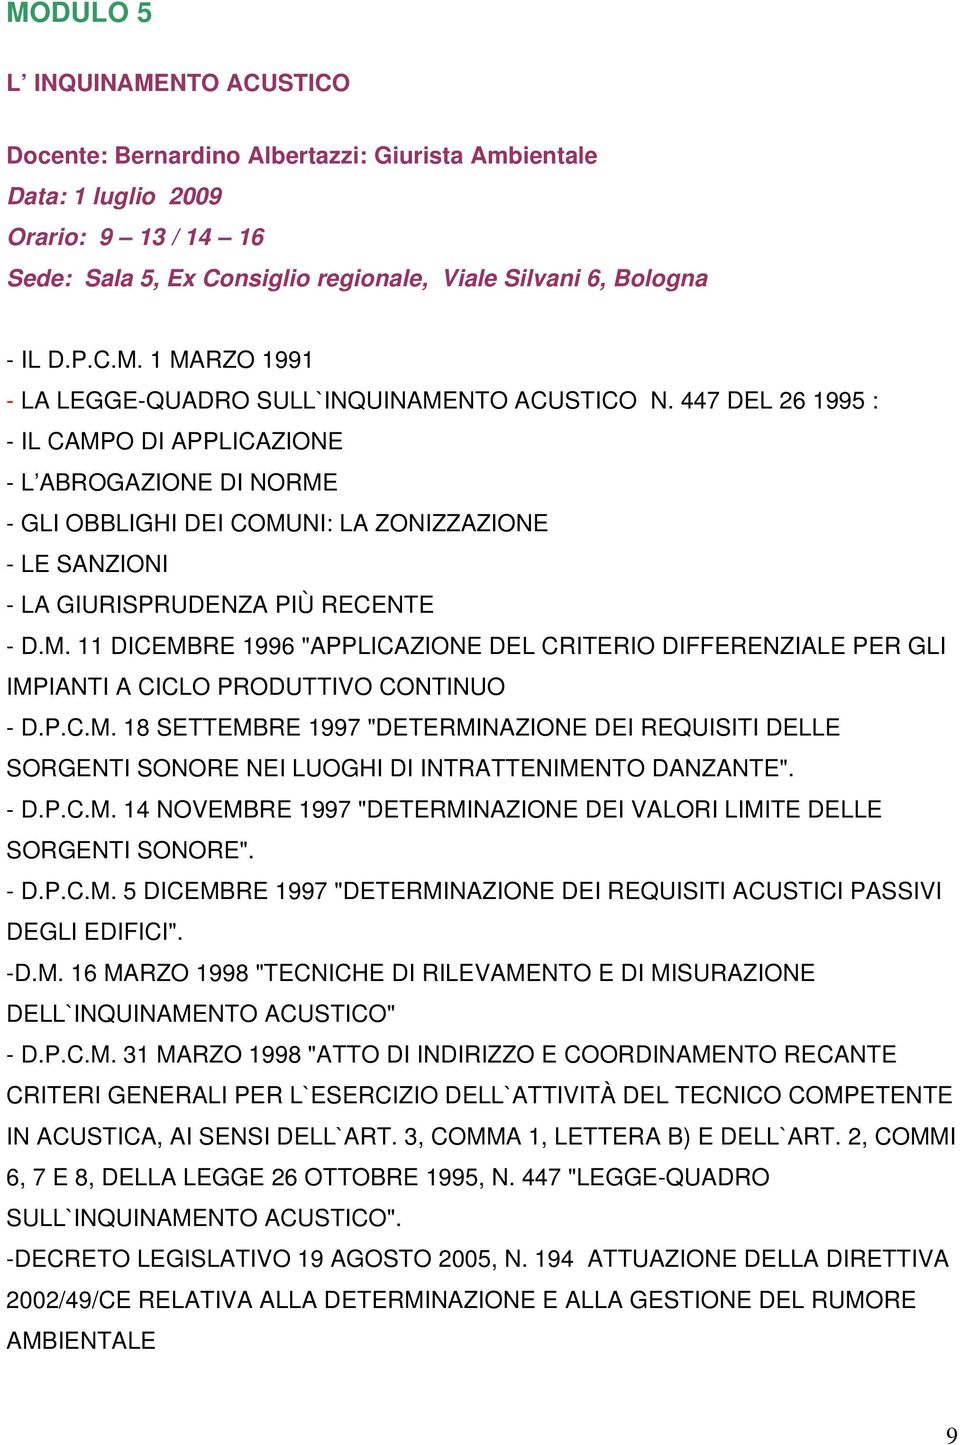 P.C.M. 18 SETTEMBRE 1997 "DETERMINAZIONE DEI REQUISITI DELLE SORGENTI SONORE NEI LUOGHI DI INTRATTENIMENTO DANZANTE". - D.P.C.M. 14 NOVEMBRE 1997 "DETERMINAZIONE DEI VALORI LIMITE DELLE SORGENTI SONORE".